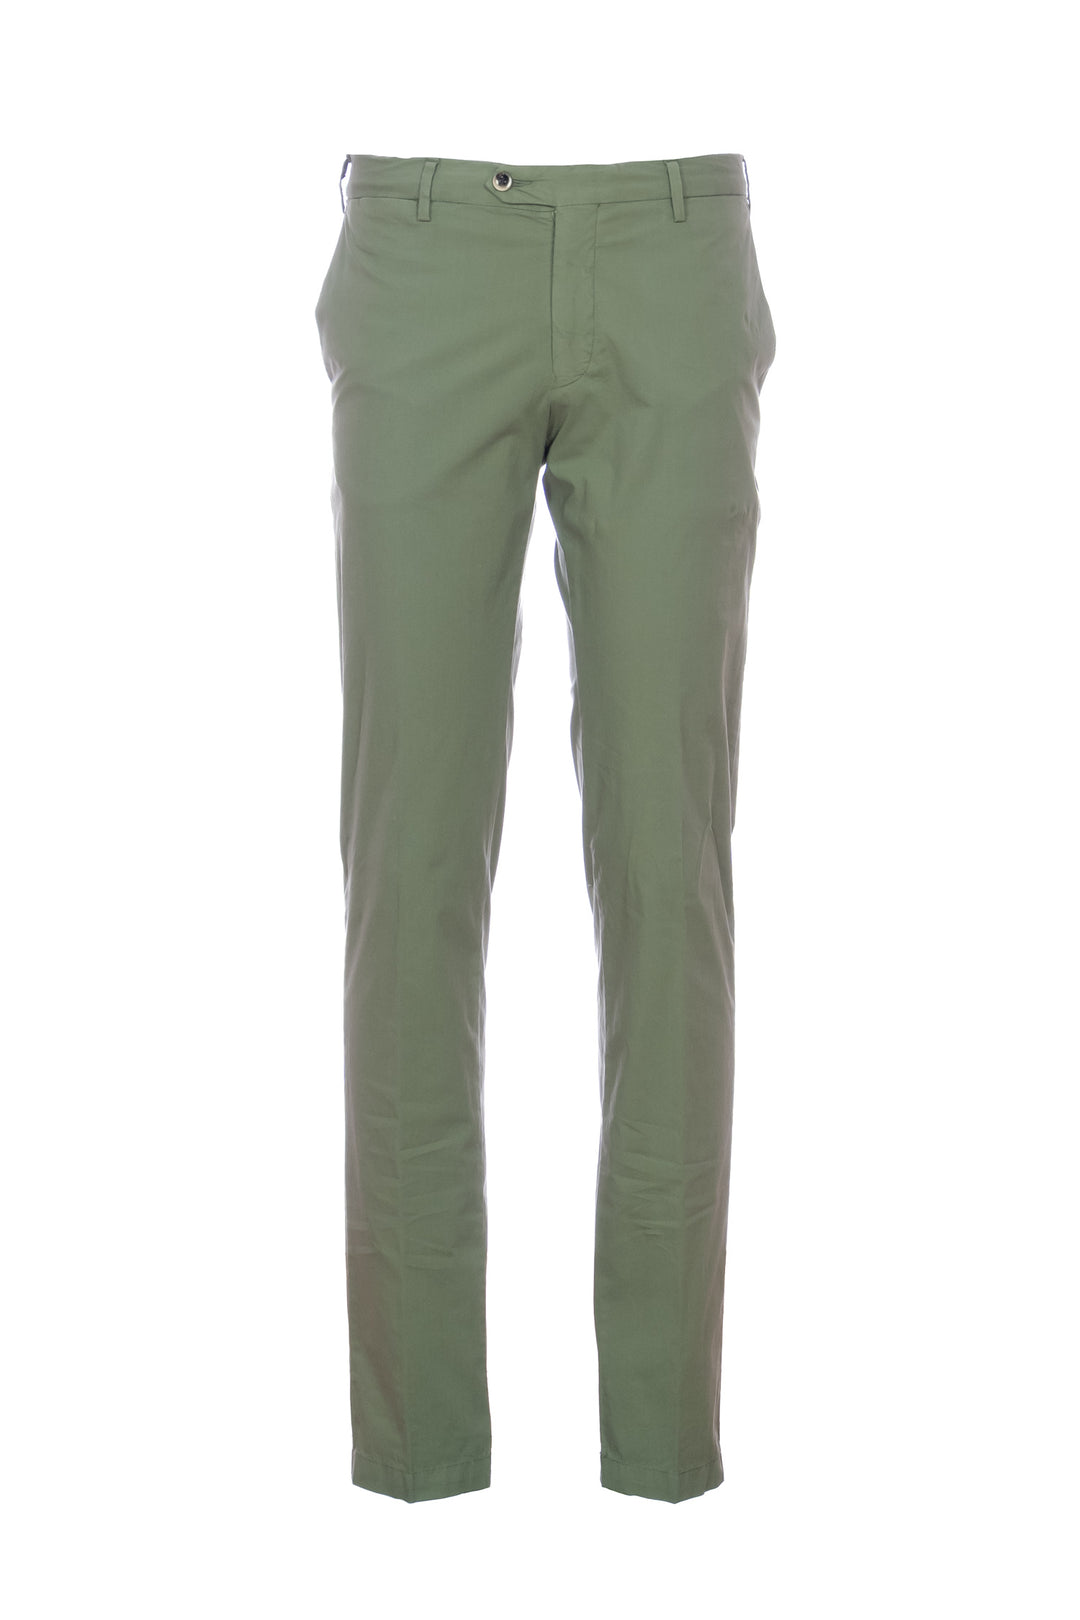 Germano Pantalone verde militare in cotone stretch - Mancinelli 1954